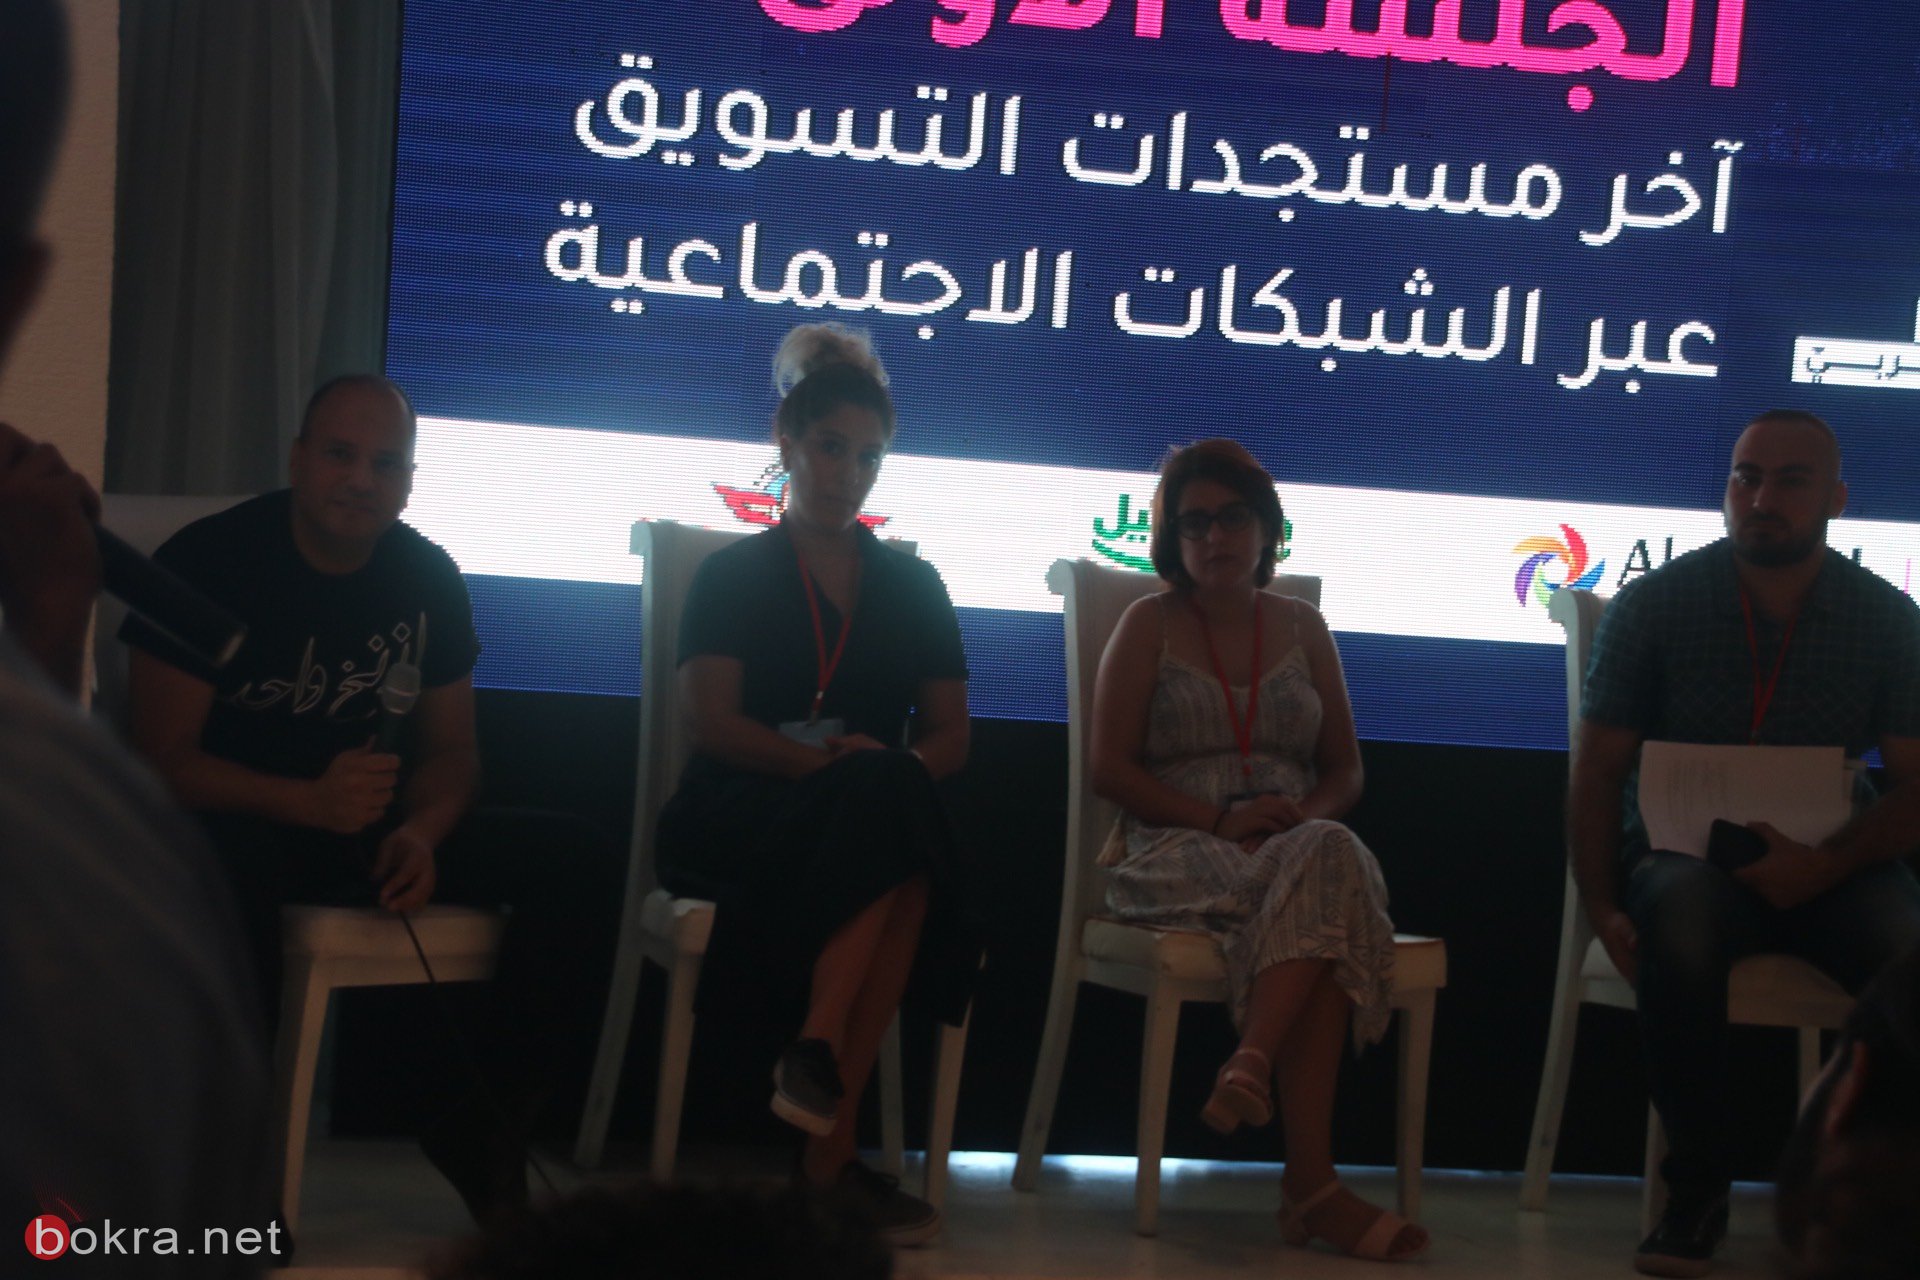 حيفا: مشاركة واسعة في مؤتمر "وصول" حول آخر التطورات في قنوات التسويق الرقمي-16